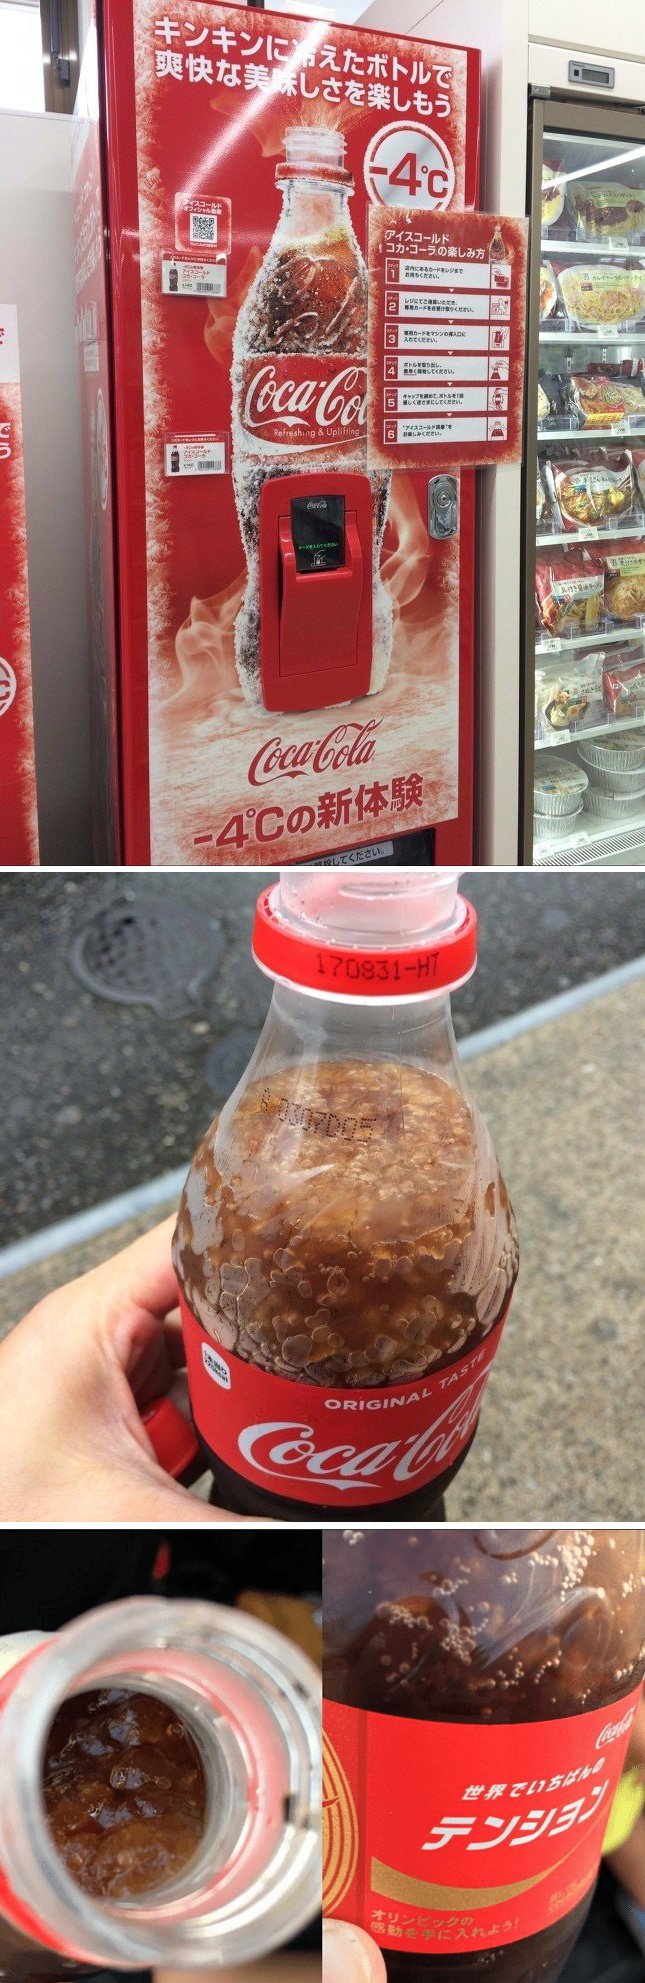 국내도입 시급한 콜라 자판기